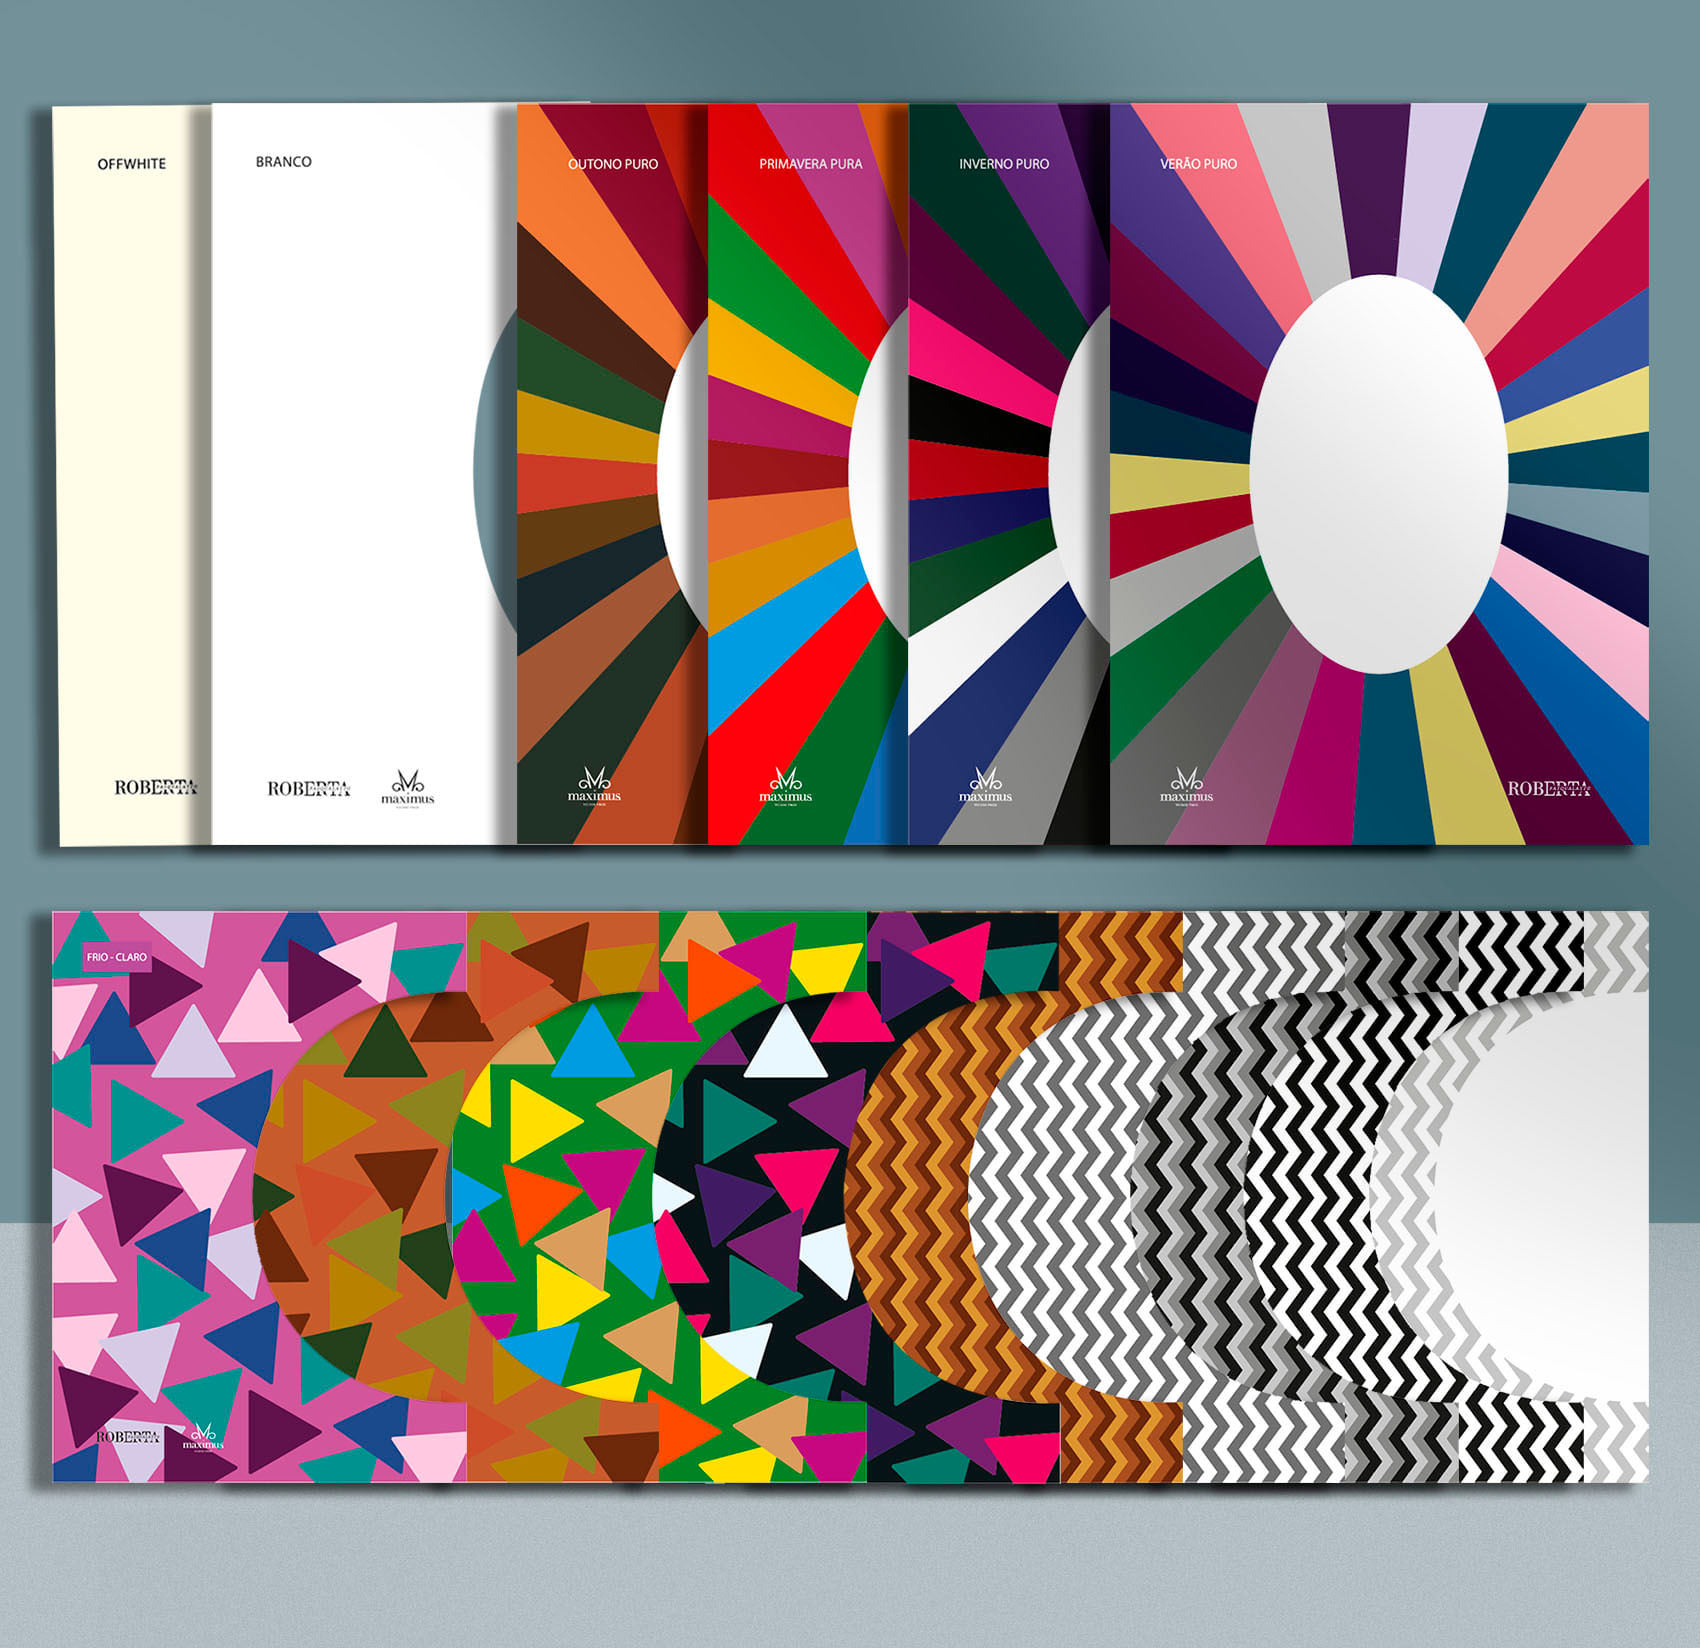 Cards de coloração (Cartela cores) para profissionais da moda by Roberta Pasqualato